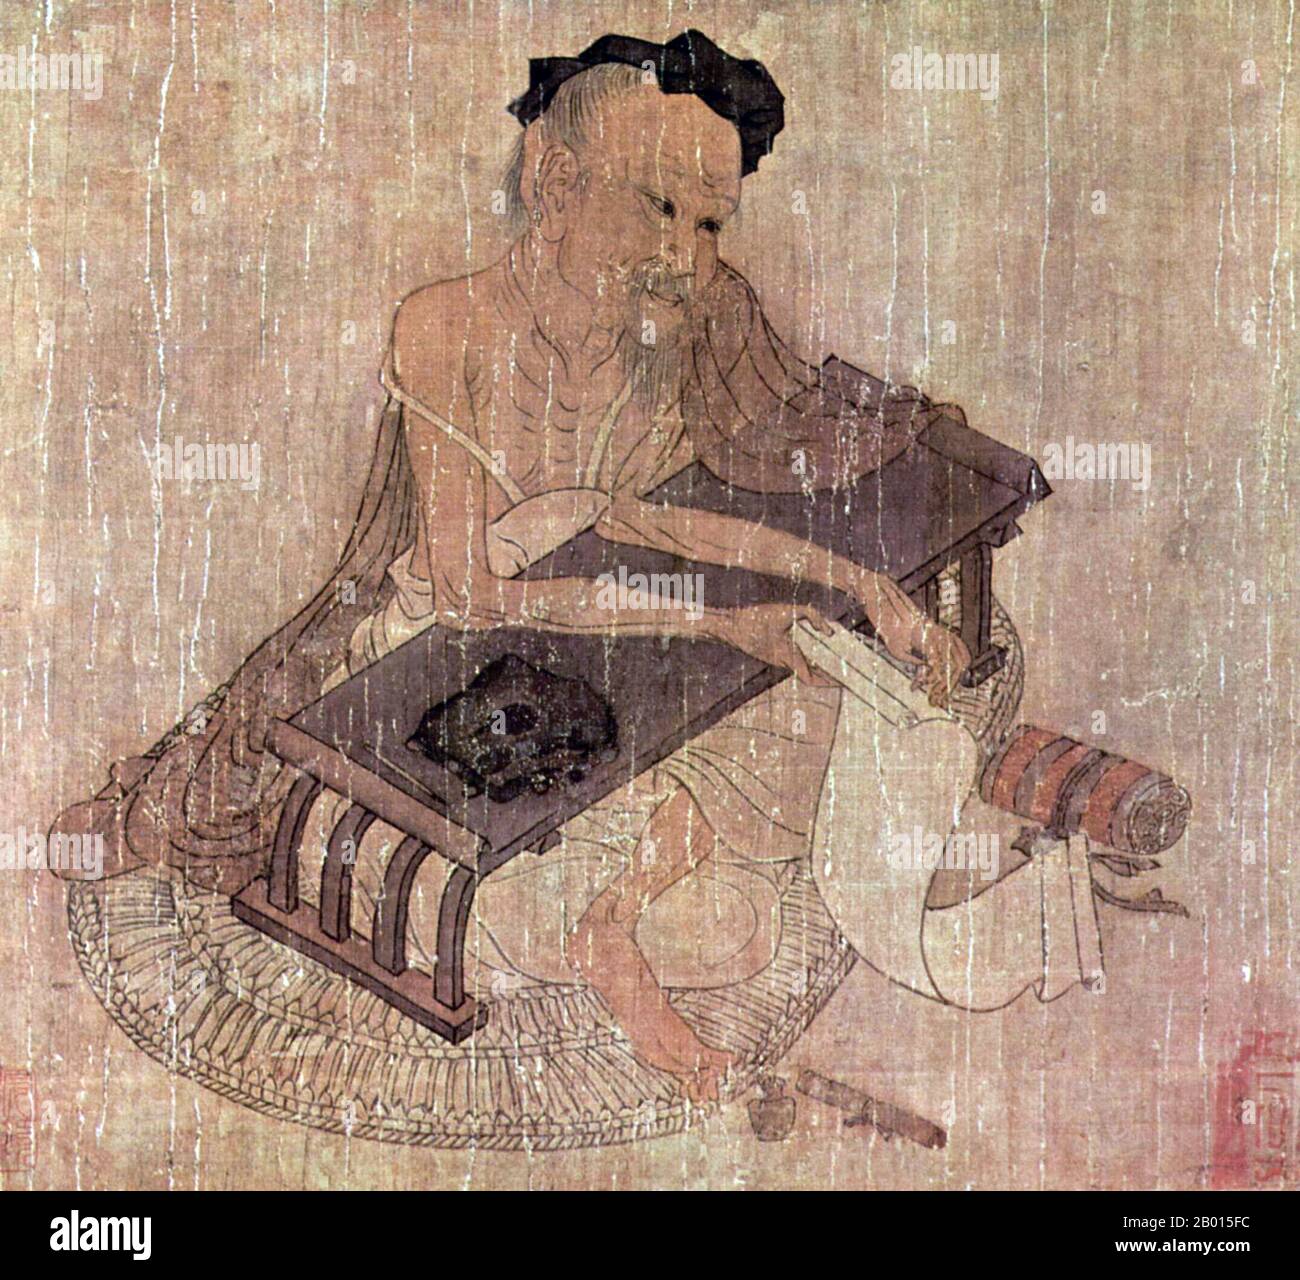 Chine : portrait de l'érudit Fu Sheng. Tableau de Handscroll par le peintre Wang Wei (699-759), c. 720-760 CE. Wang Wei (également connu sous le nom de Wang Youcheng, 699-759), était un poète, musicien, peintre et homme d'État chinois de la dynastie Tang. Il était l'un des hommes d'arts et de lettres les plus célèbres de son temps. Ses peintures ne survivent que dans des copies ultérieures par d'autres artistes, mais néanmoins très influent en termes de peinture de la dynastie Tang et la peinture chinoise subséquente. Beaucoup de ses poèmes sont conservés, et vingt-neuf ont été inclus dans l'anthologie très influente du XVIIIe siècle 'trois cents Poèmes de Tang'. Banque D'Images